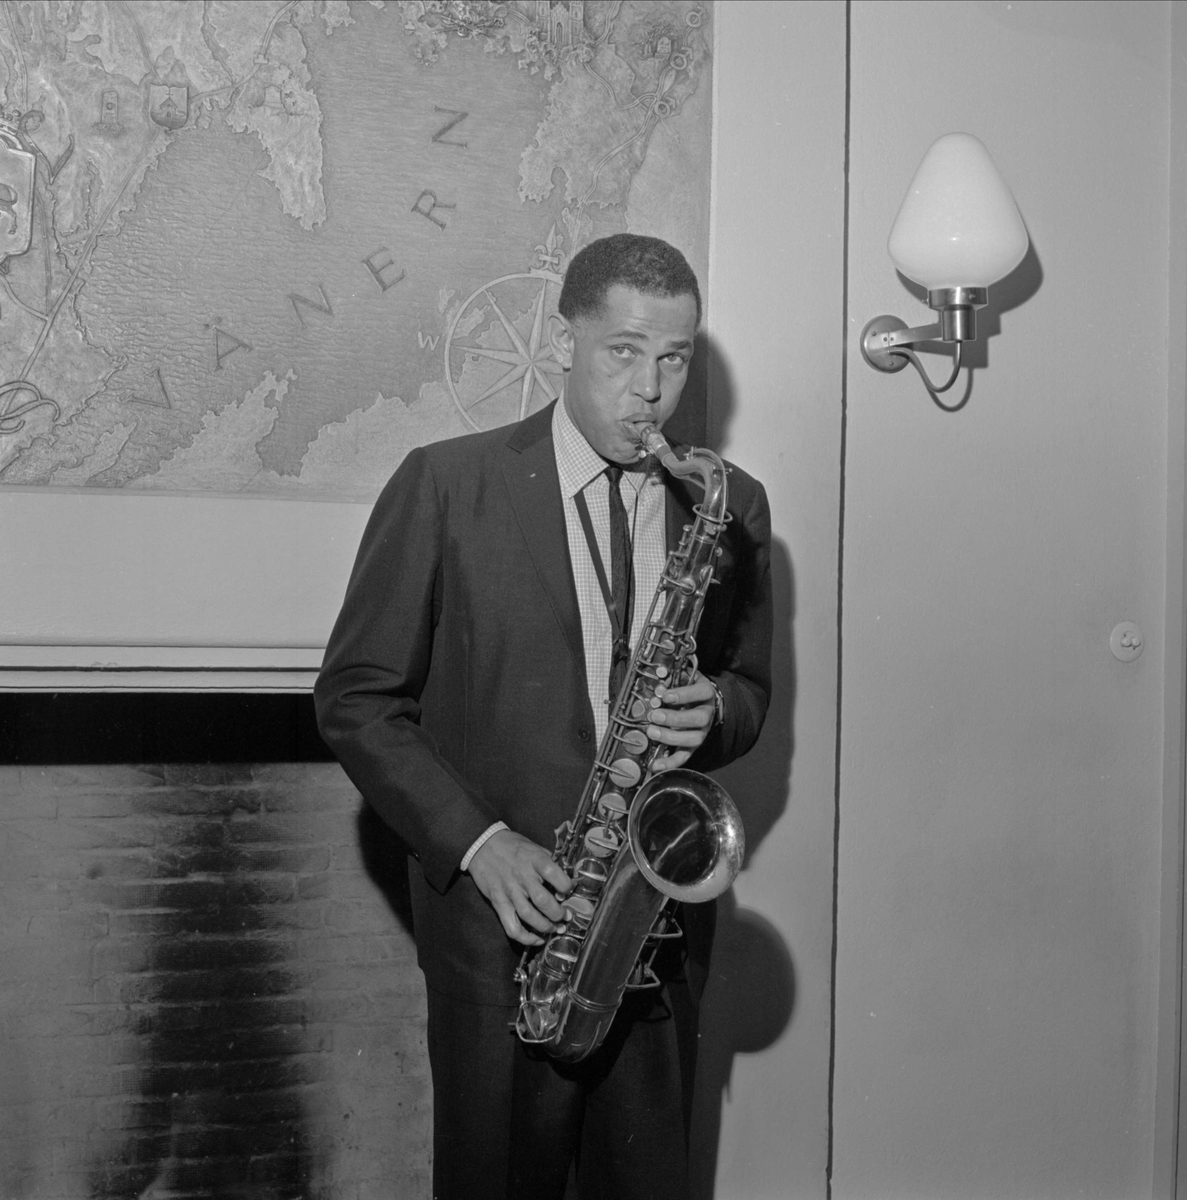 Jazzkonsert med Dexter Gordon, Gästrike-Hälsinge nation, Trädgårdsgatan, Uppsala, oktober 1964